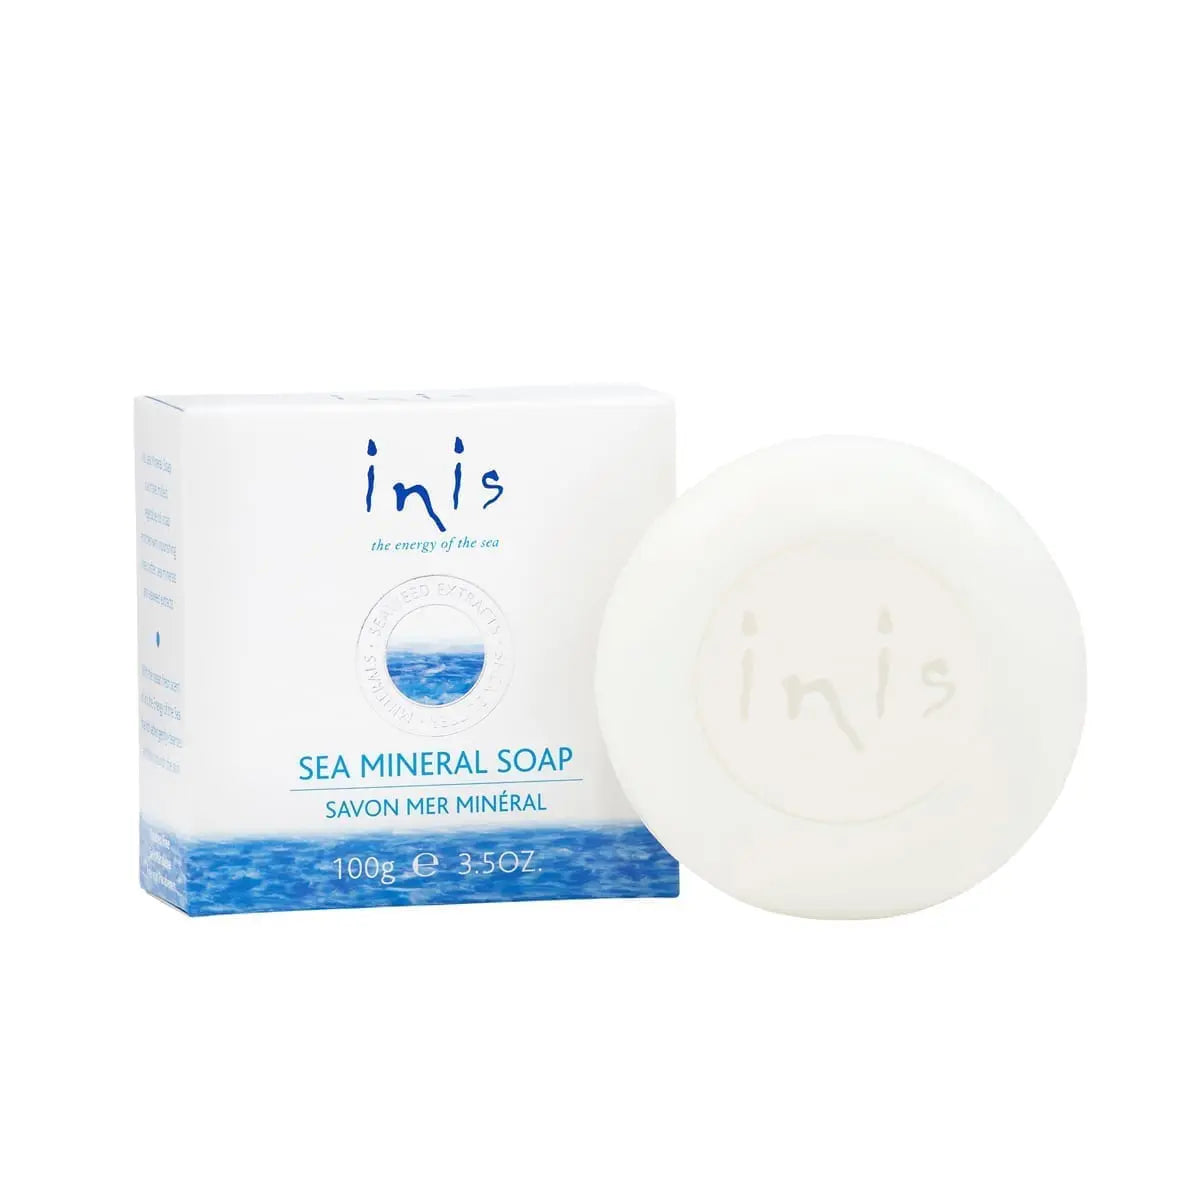 Sea Mineral Soap 3.5 oz.